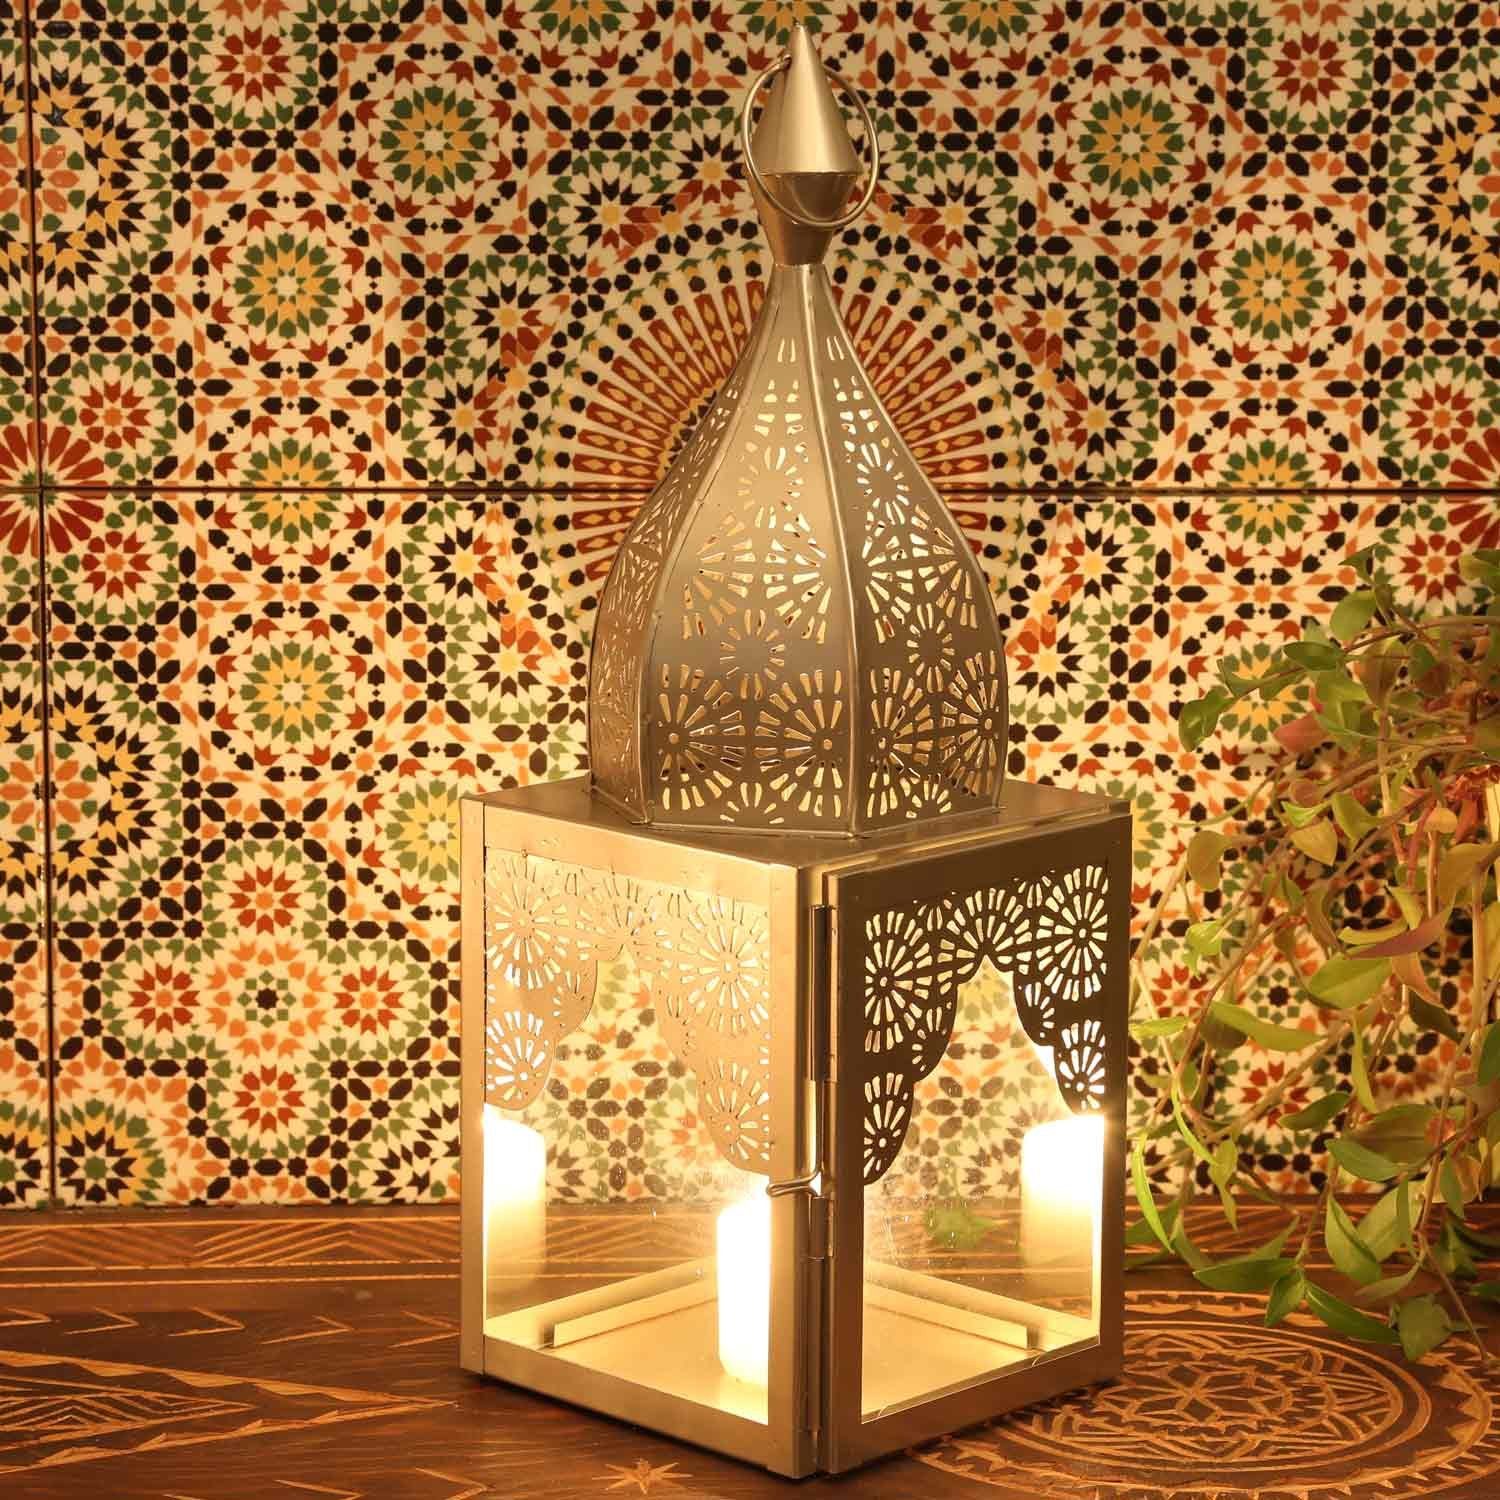 Casa Moro Bodenwindlicht Orientalisches Windlicht Modena Silber M aus Glas & Metall Höhe 45cm Minarett Form, Marokkanische Glaslaterne Kerzenhalter wie aus 1001 Nacht, schöne Laterne Weihnachtsbeleuchtung, IRL670, Kunsthandwerk, marokkanische Minarette